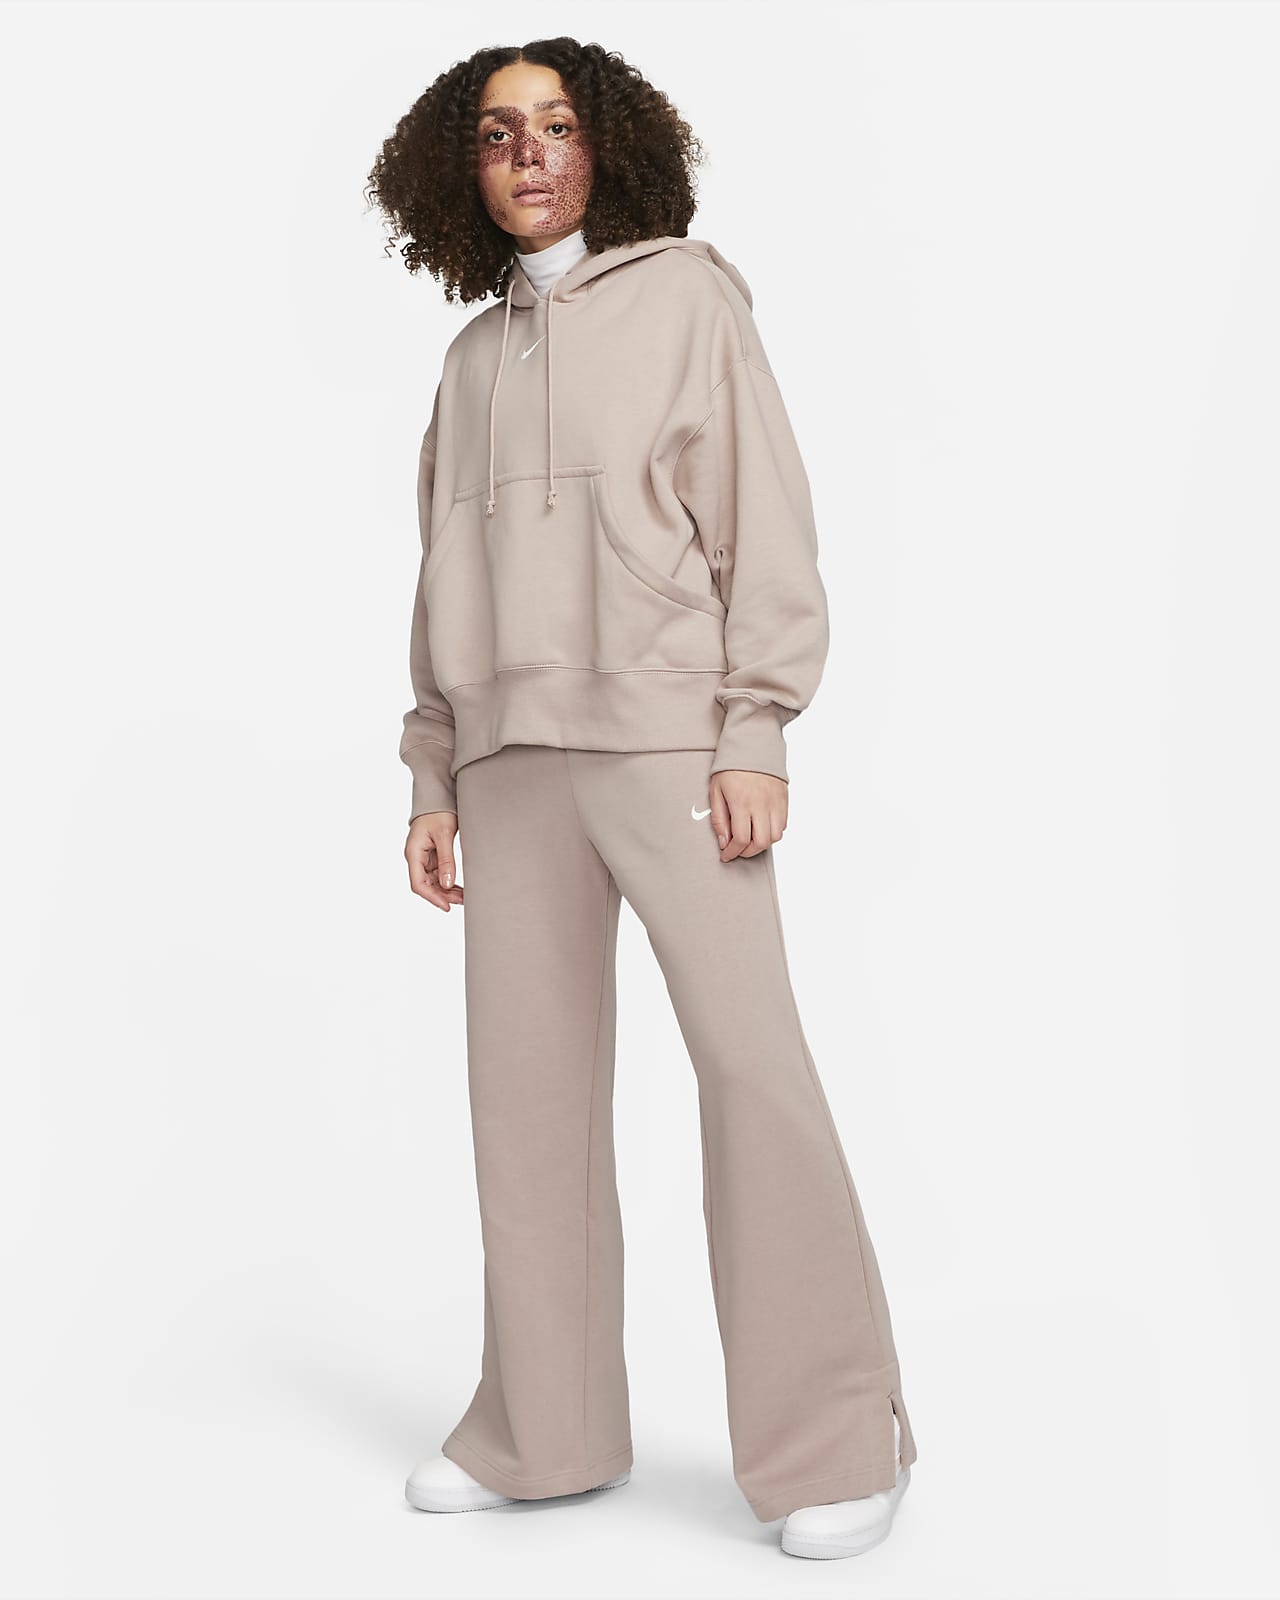 Nike Women Sportswear Fleece Wide-Leg Sweatpants in Grey, Diff  Sizes,FB2727-063 